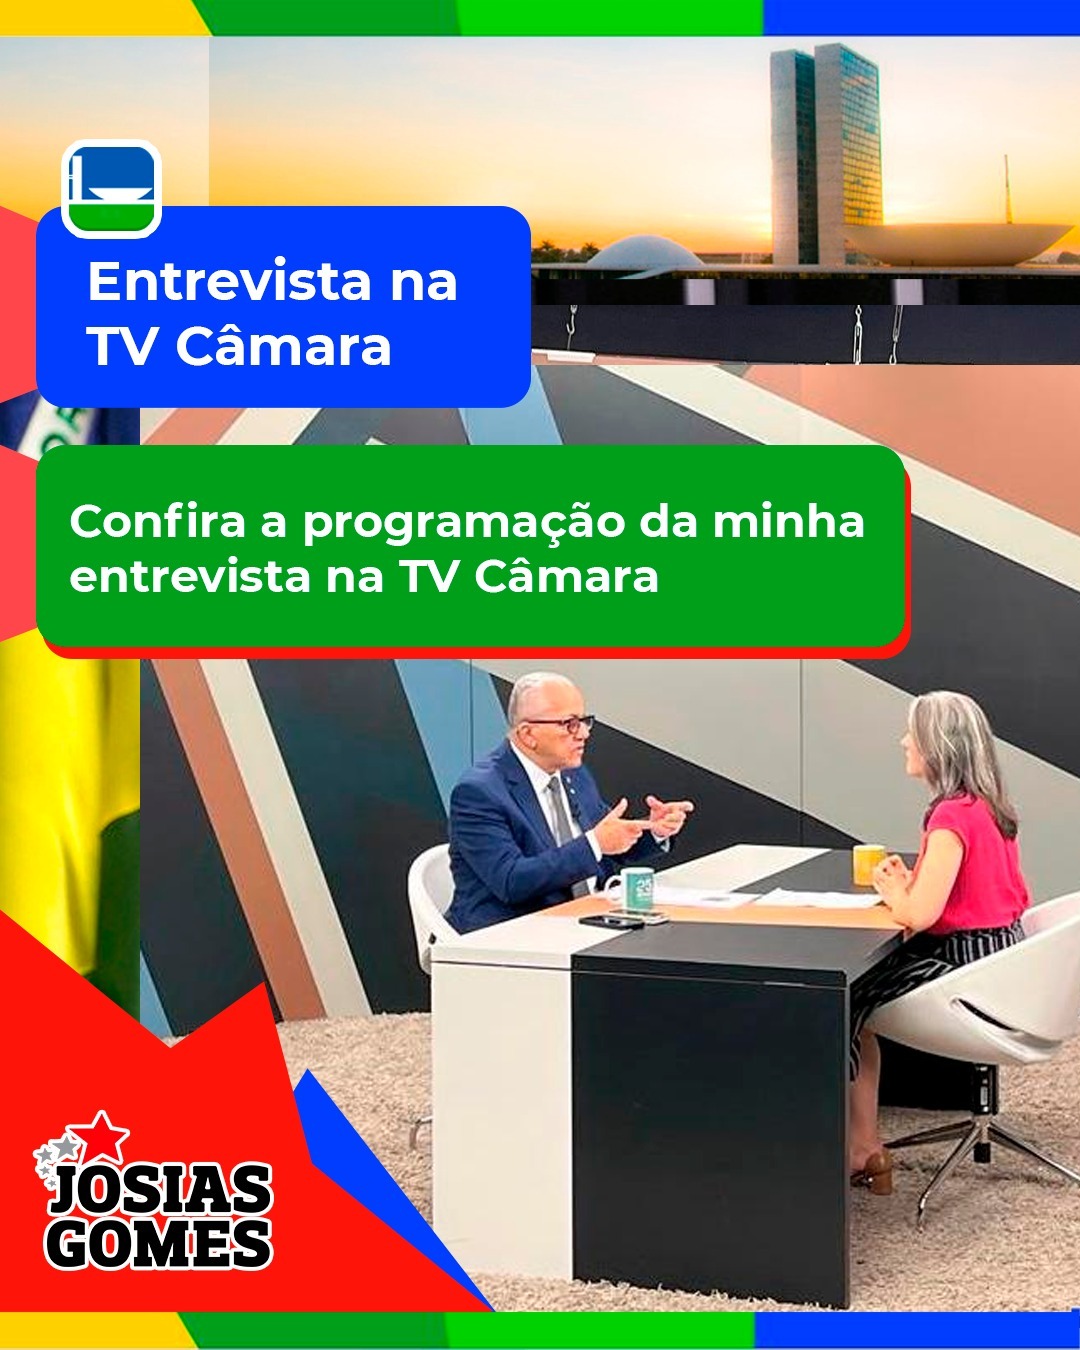 Josias Gomes No Programa Palavra Aberta Da TV Câmara